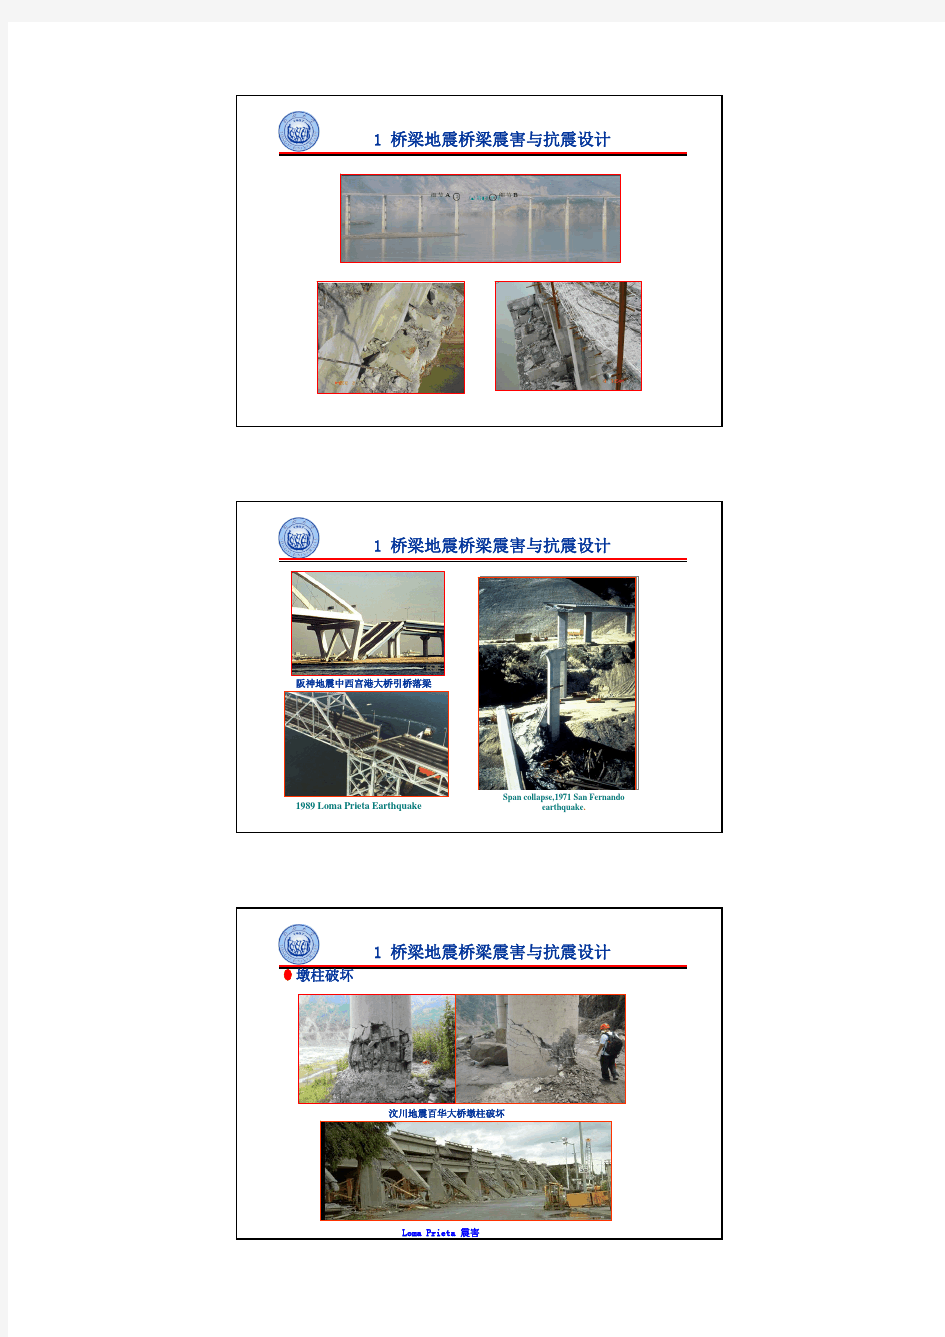 城市桥梁抗震设计规范(CJJ 166-2011)宣贯讲义(同济 李建中)